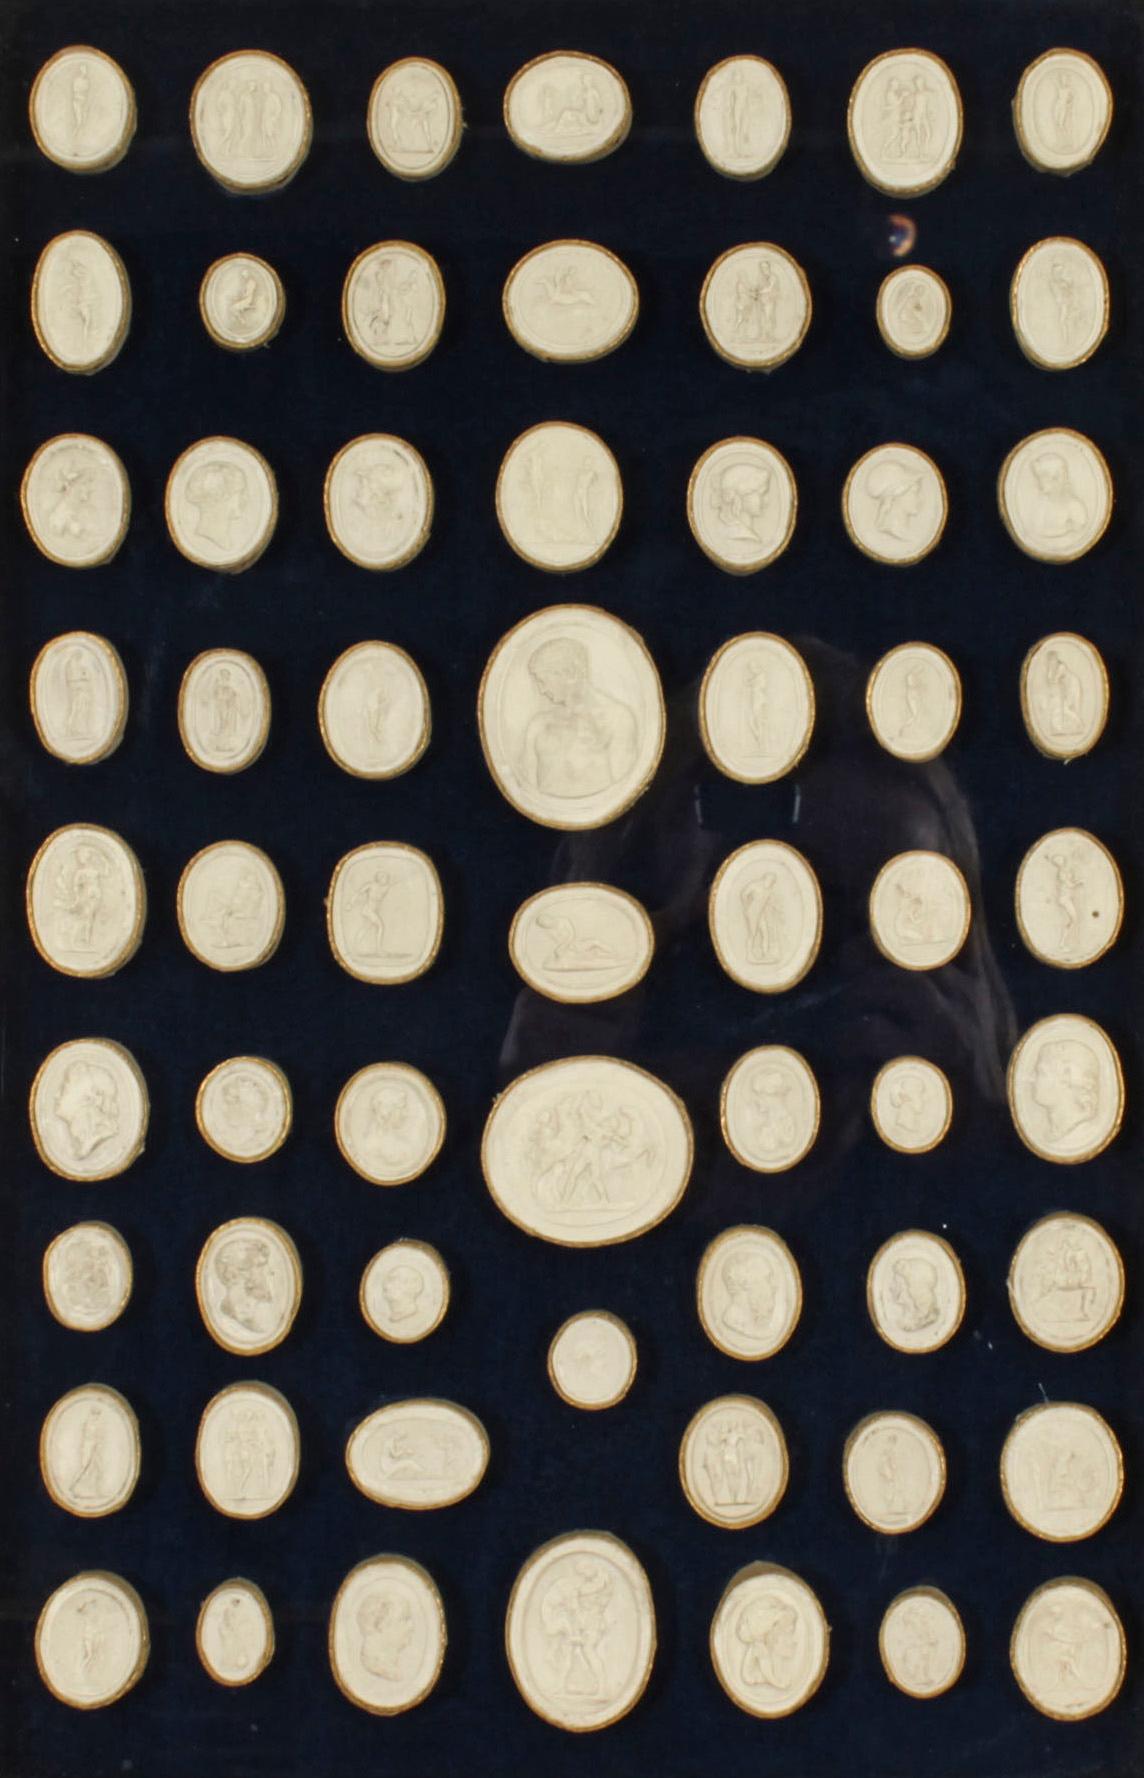 Un élégant cadre en bois doré renfermant soixante-trois intailles de Giovanni Liberotti du Grand Tour datant du début du XIXe siècle.
  
Les intailles en plâtre de forme ovale représentent des sujets issus principalement de l'Antiquité classique. 
 